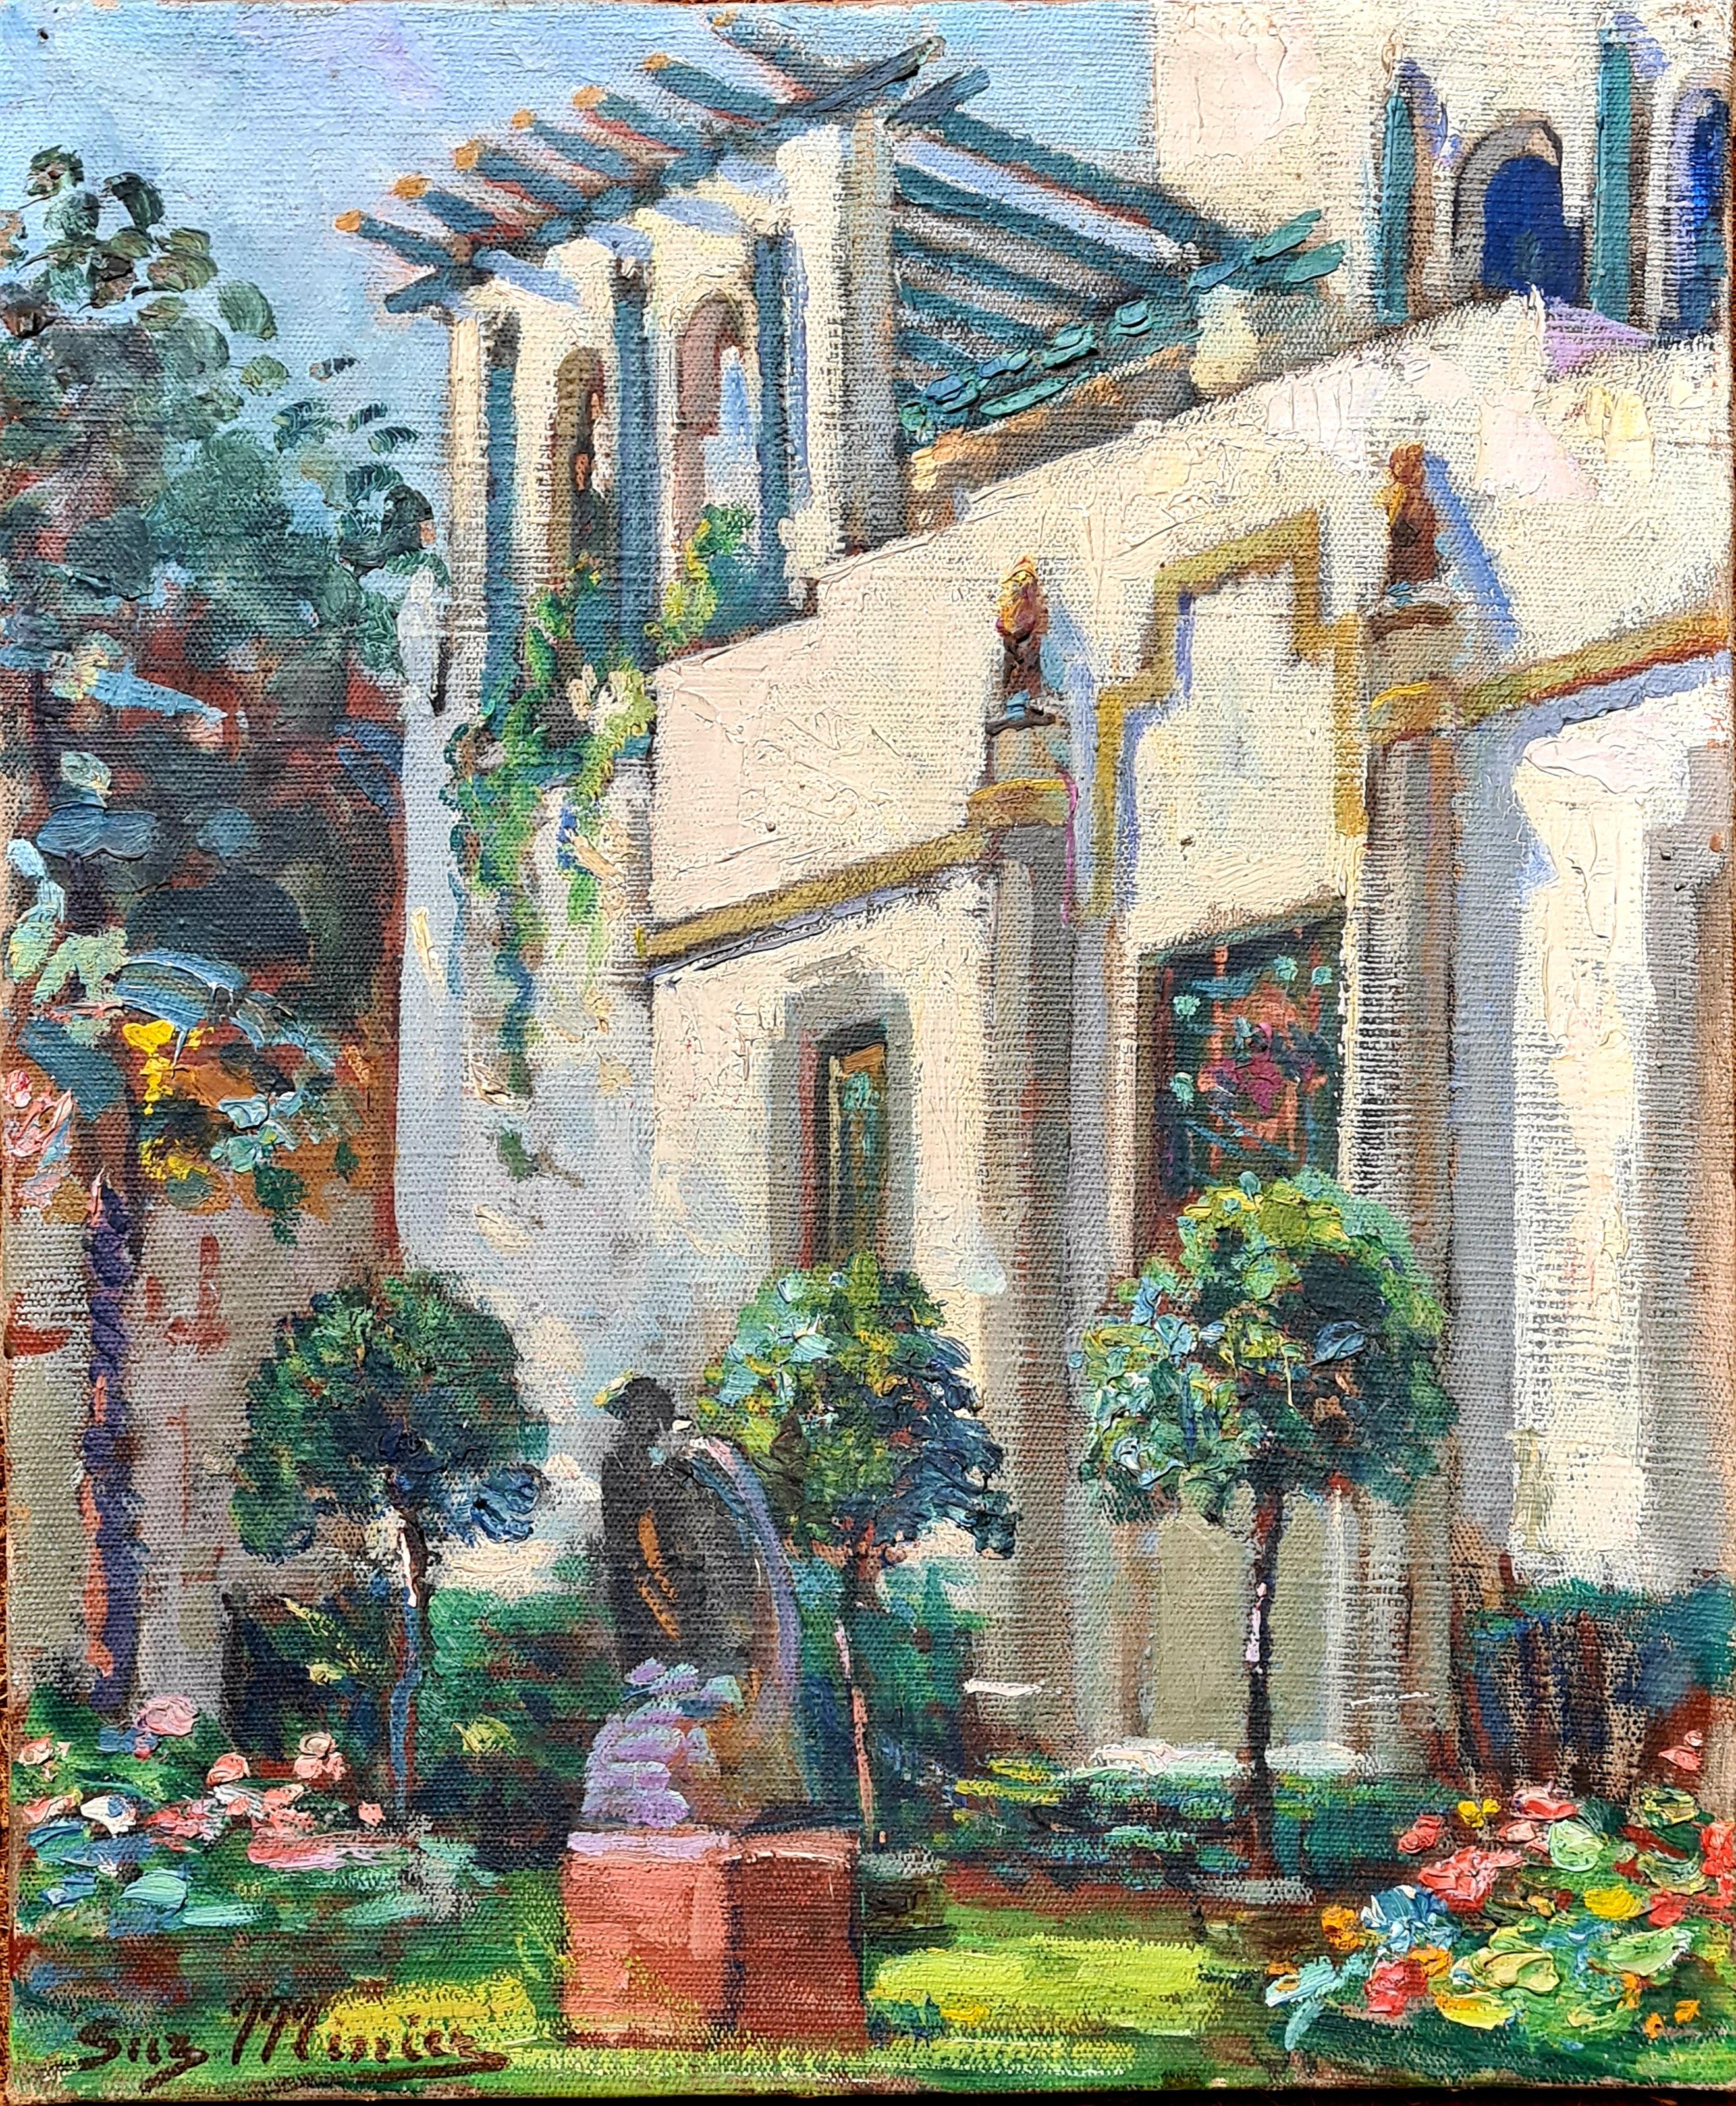 Moorish, Belle Epoque, Villa und Garten in St. Tropez – Painting von Suzanne Minier